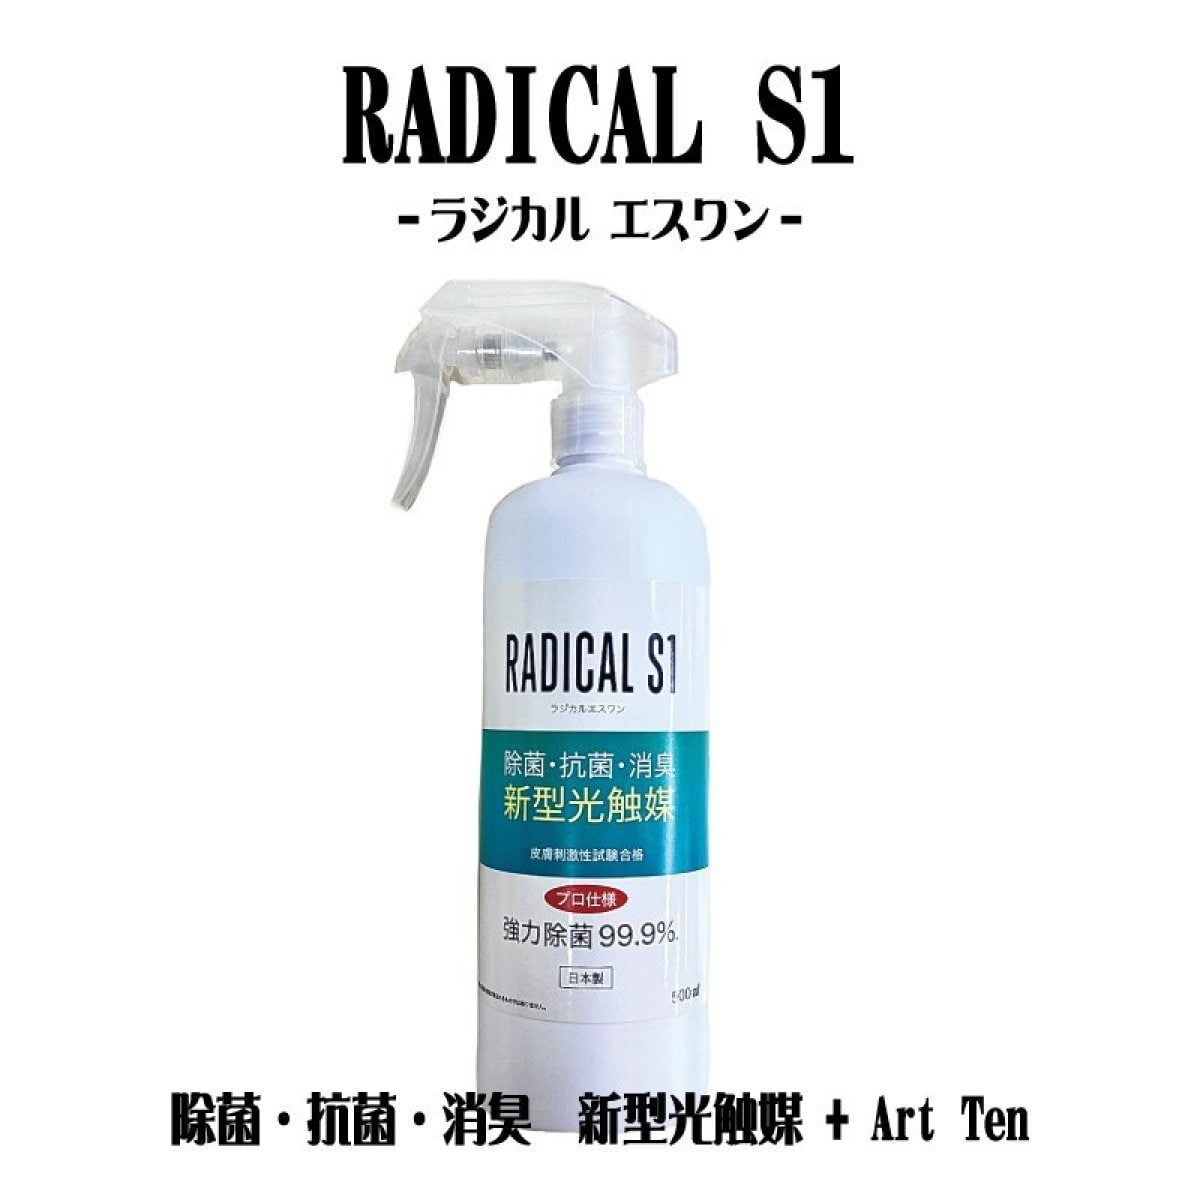 RADICAL S1 -ラジカル エスワン-